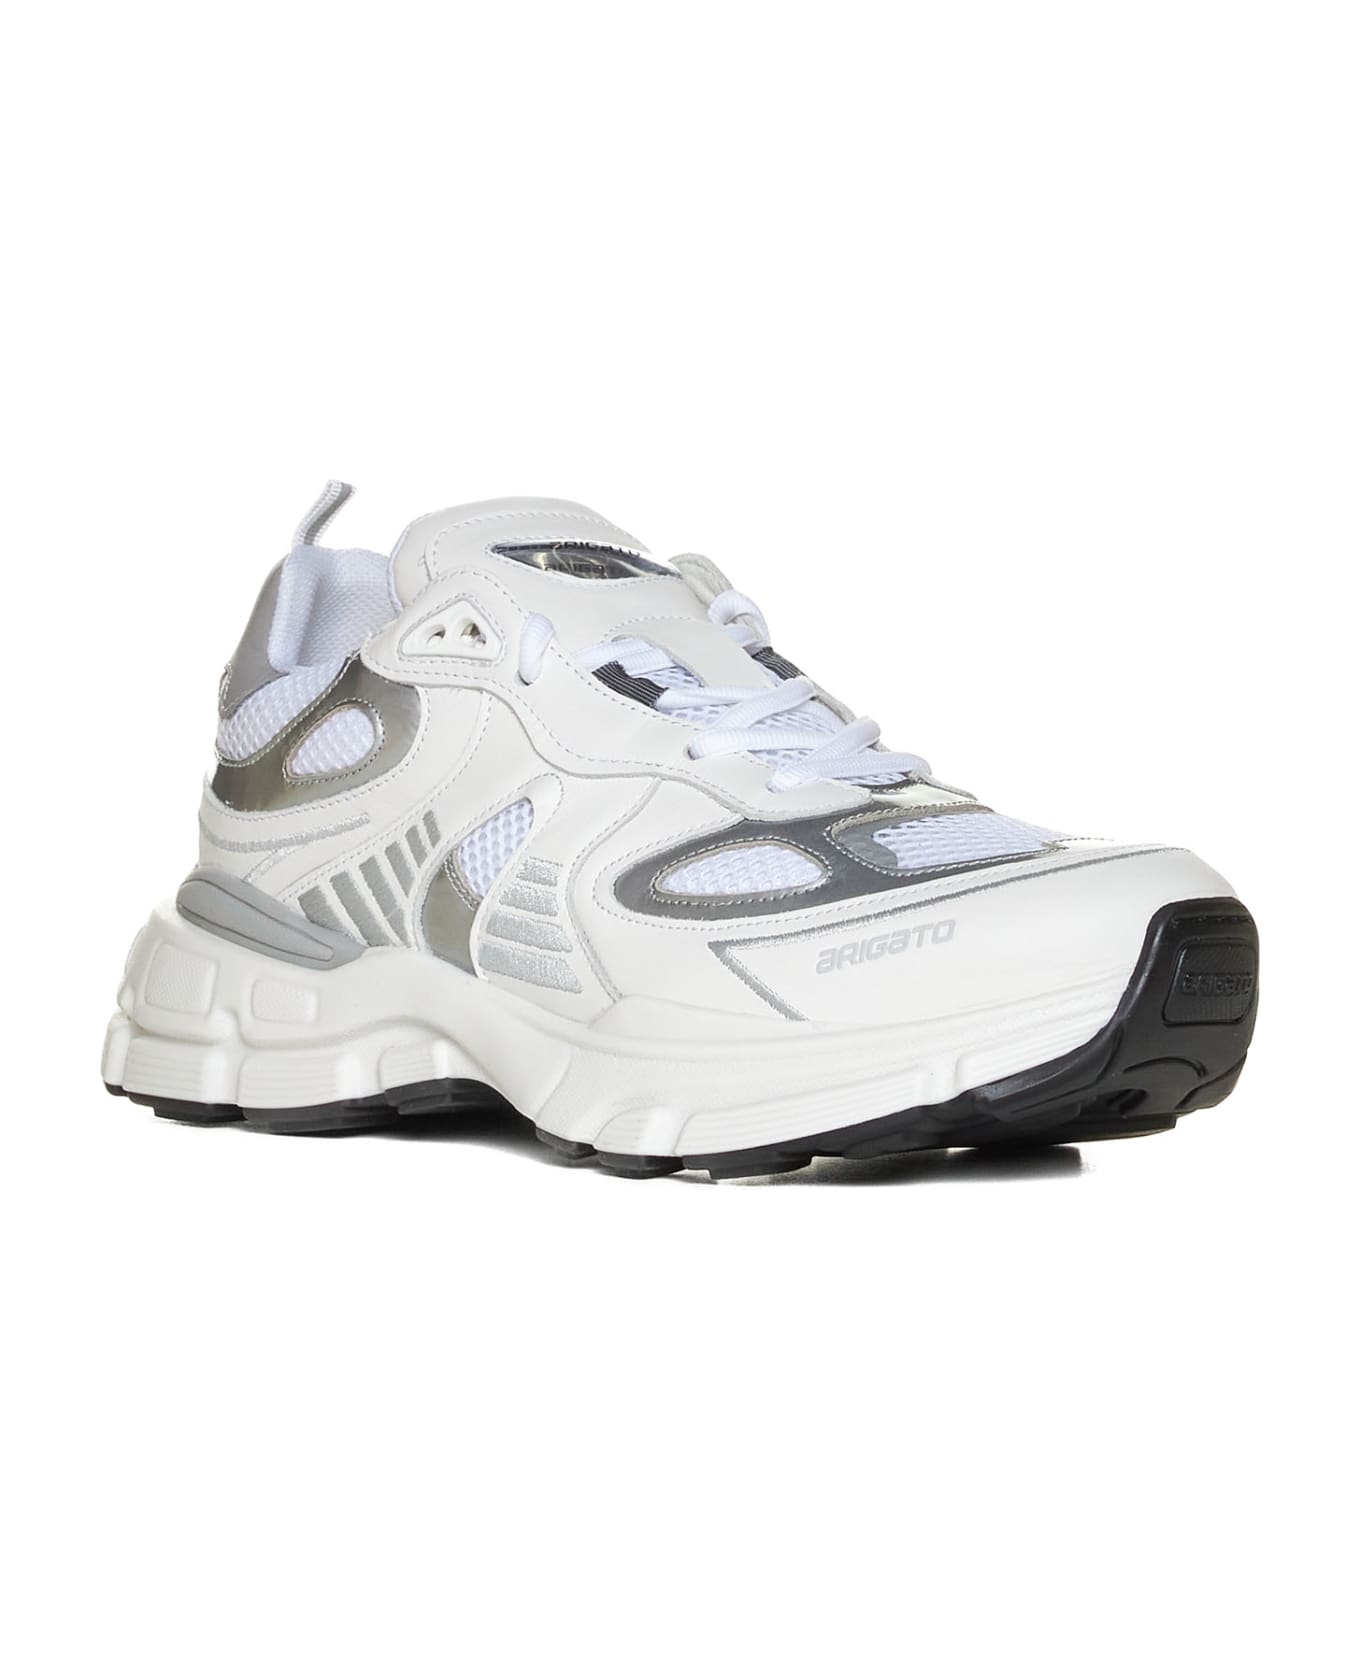 Axel Arigato Sneakers - White/silver